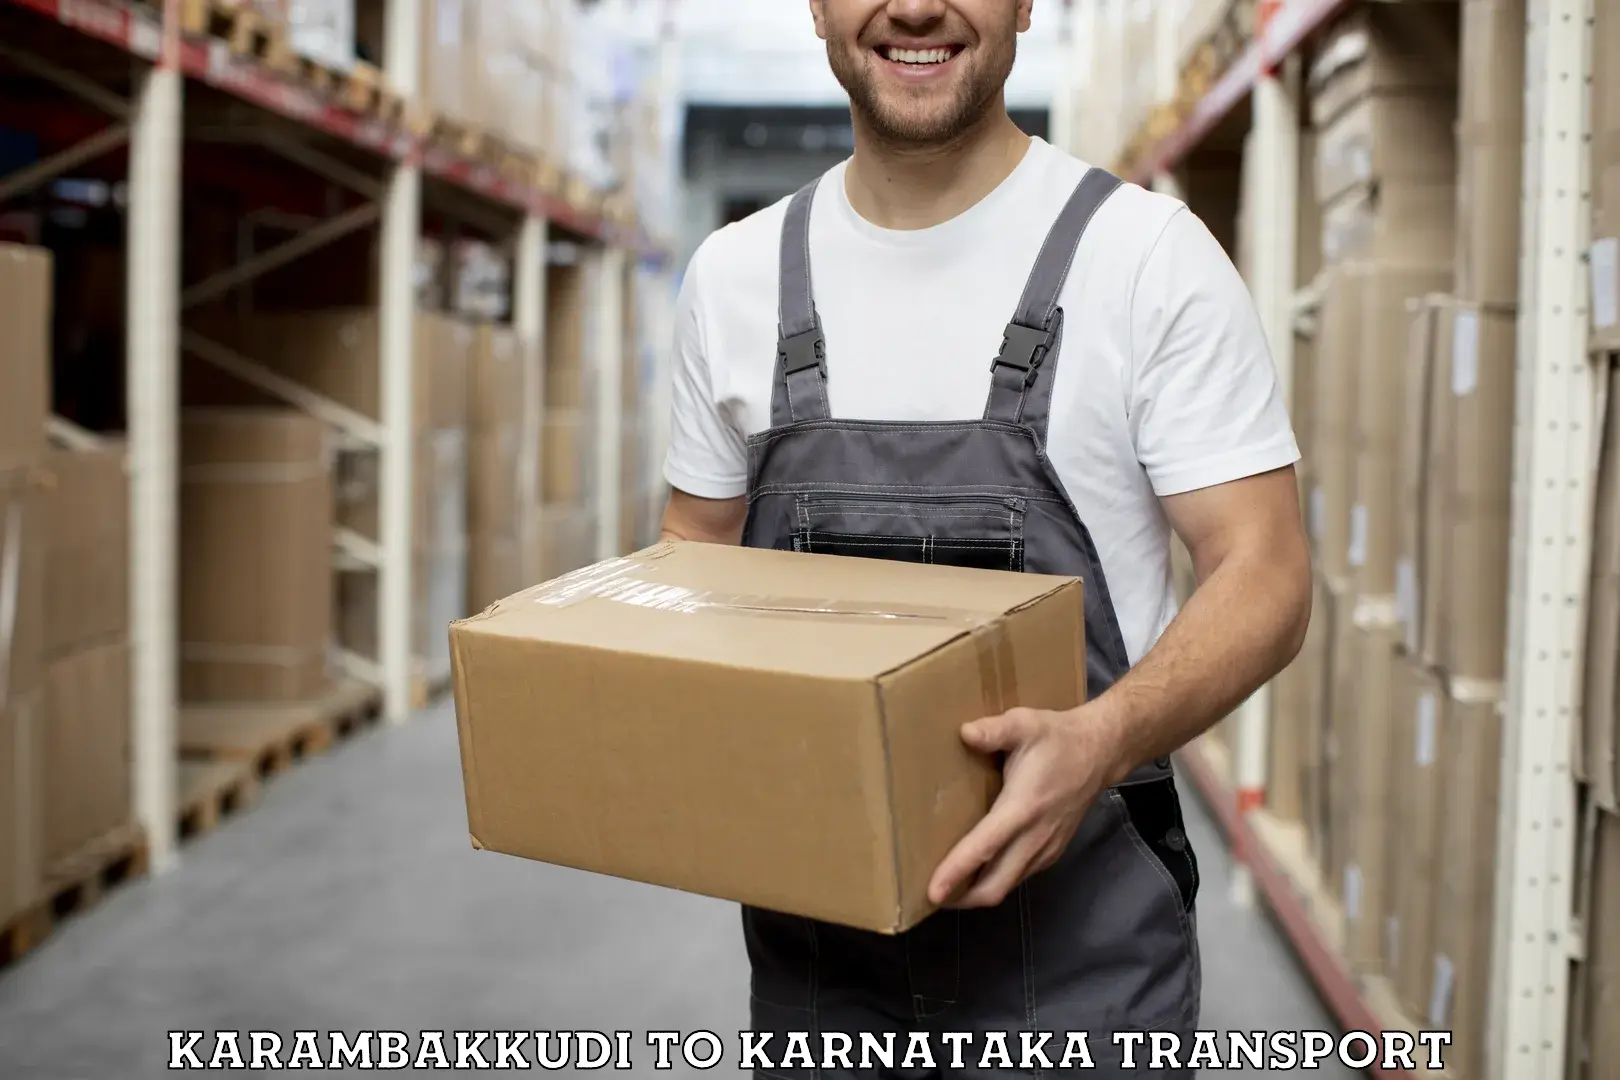 Bike shipping service Karambakkudi to Karnataka